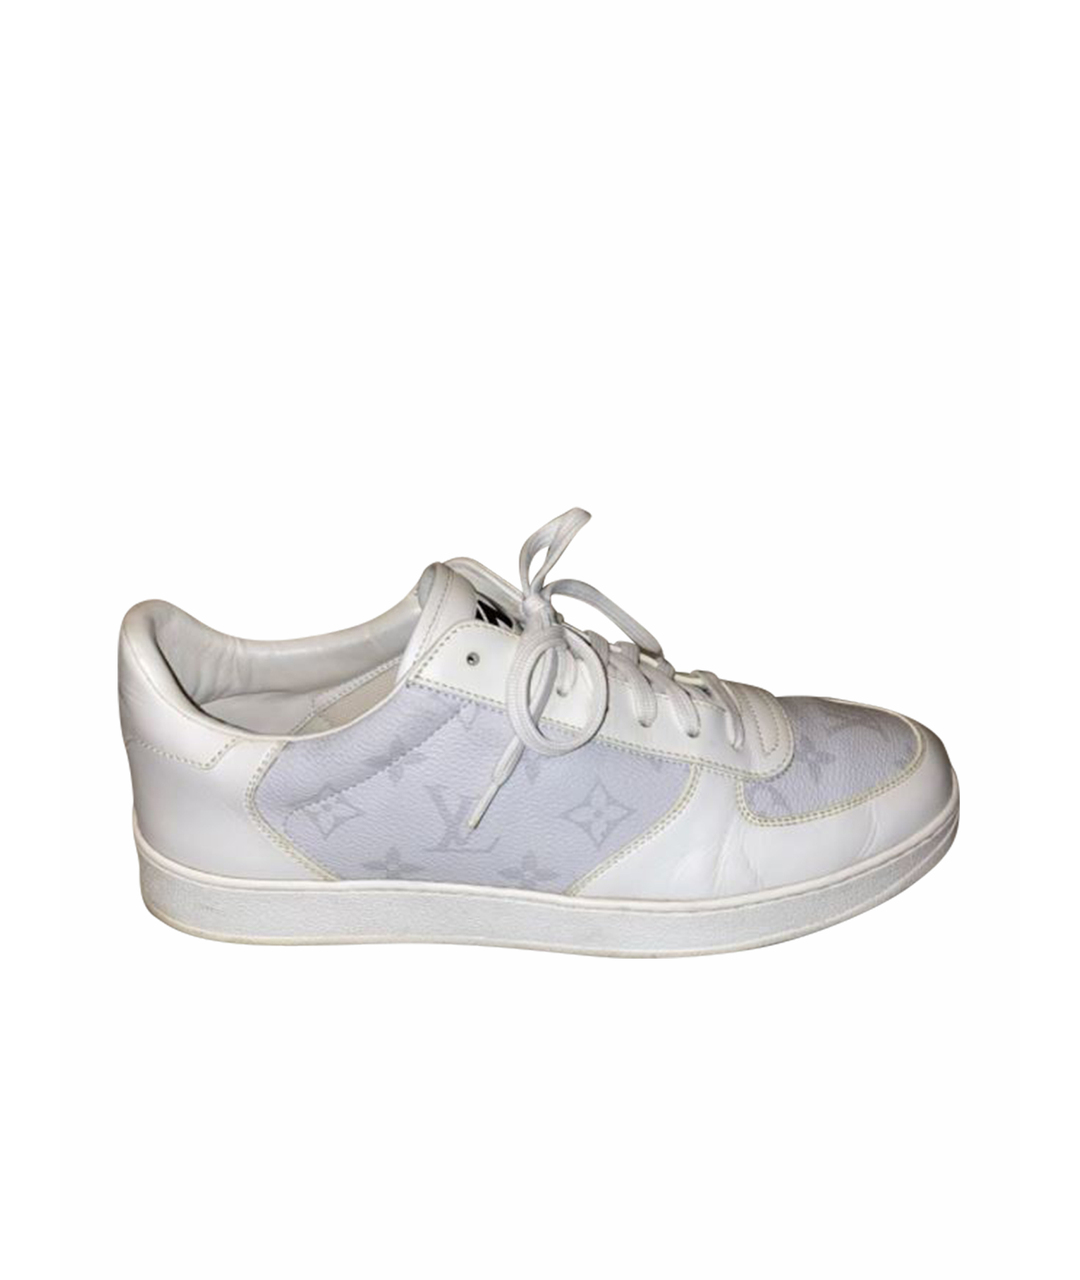 LOUIS VUITTON PRE-OWNED Белые кожаные низкие кроссовки / кеды, фото 1